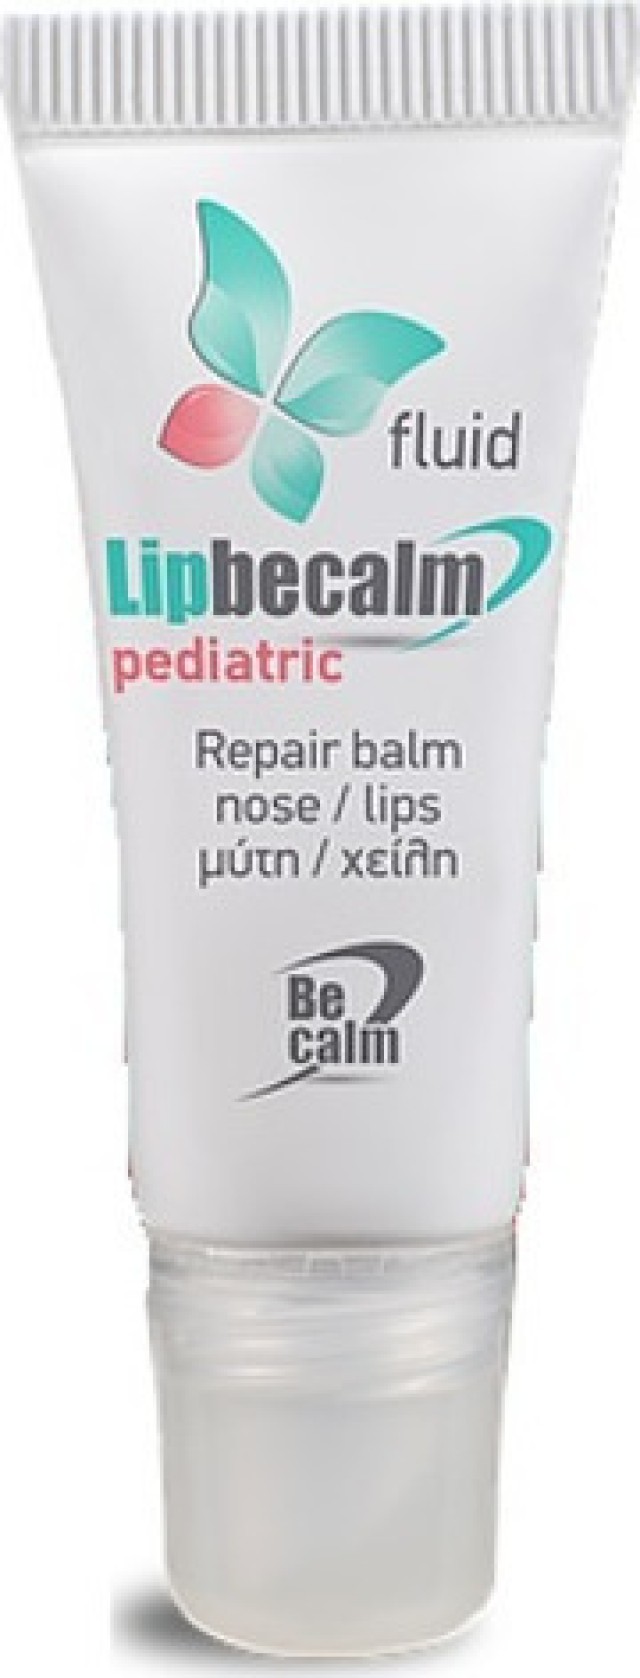 BECALM Lipbecalm Pediatric Fluid Repair Nose & Lips Balm Επανορθωτικό Βάλσαμο για την Ξηρότητα, τα Σκασίματα & τους Ερεθισμούς σε Μύτη & Χείλια των Παιδιών, με Γεύση Κεράσι, 10ml για Ερεθισμούς 10ml